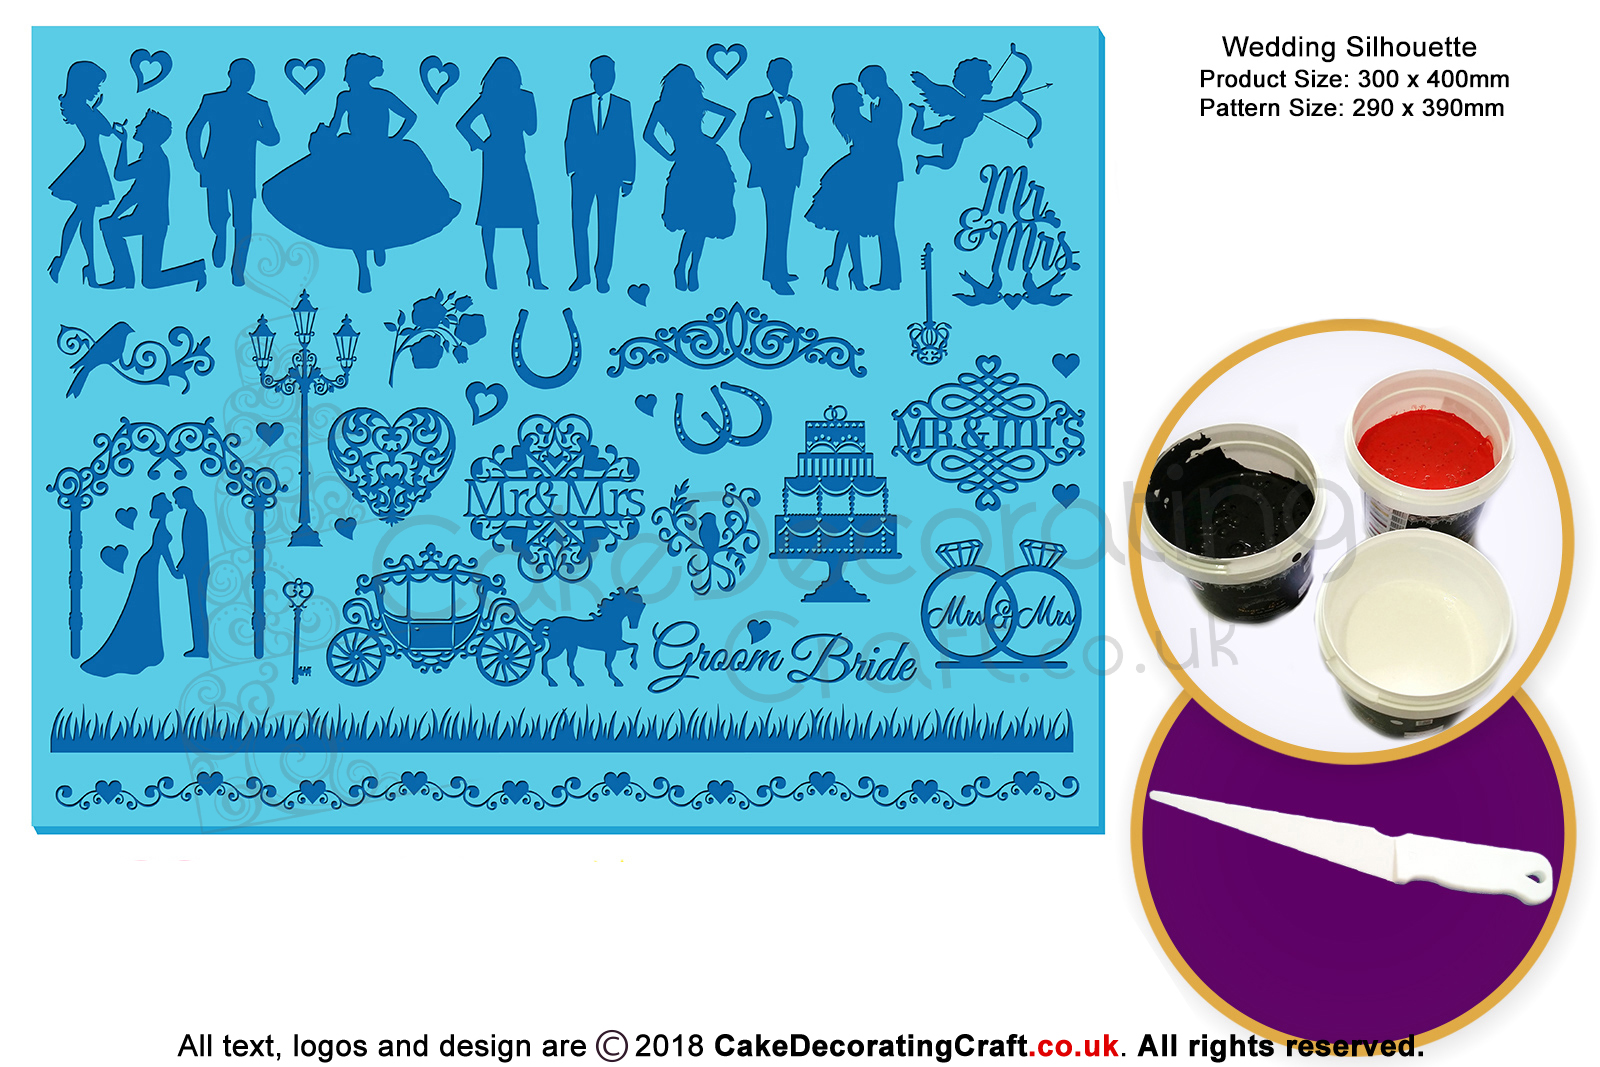 Wedding Bells | Silhouette Cake Design Starter Kits | Cupcake Cookies Cake Decorating Craft Tool